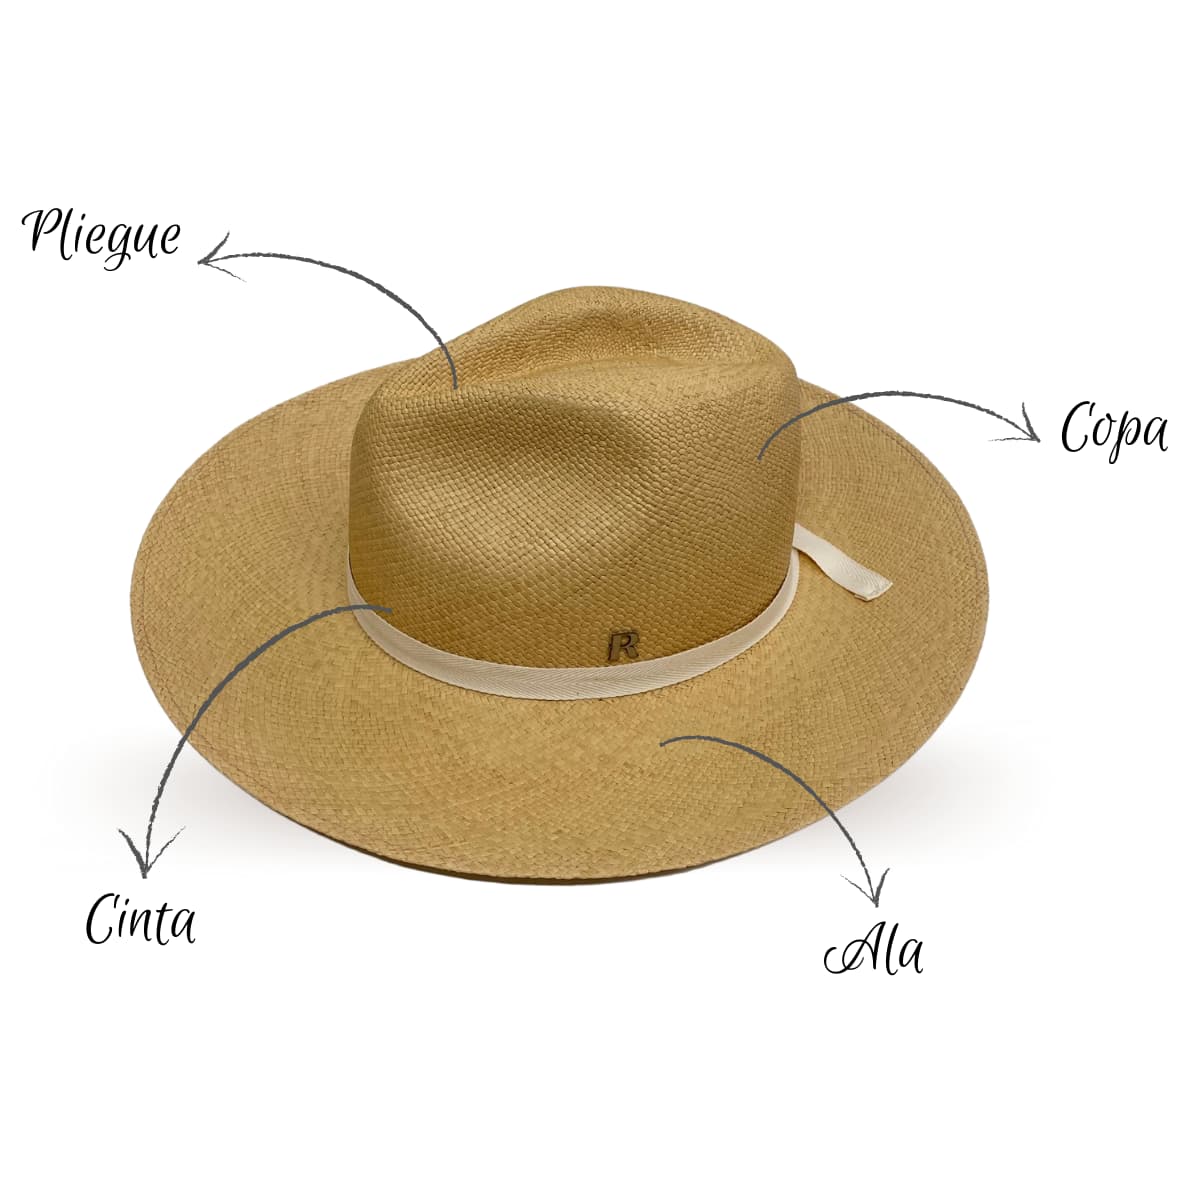 Sombrero Panamá Hombre en color Miel - Sombreros Panamá Clásicos - Raceu Hats